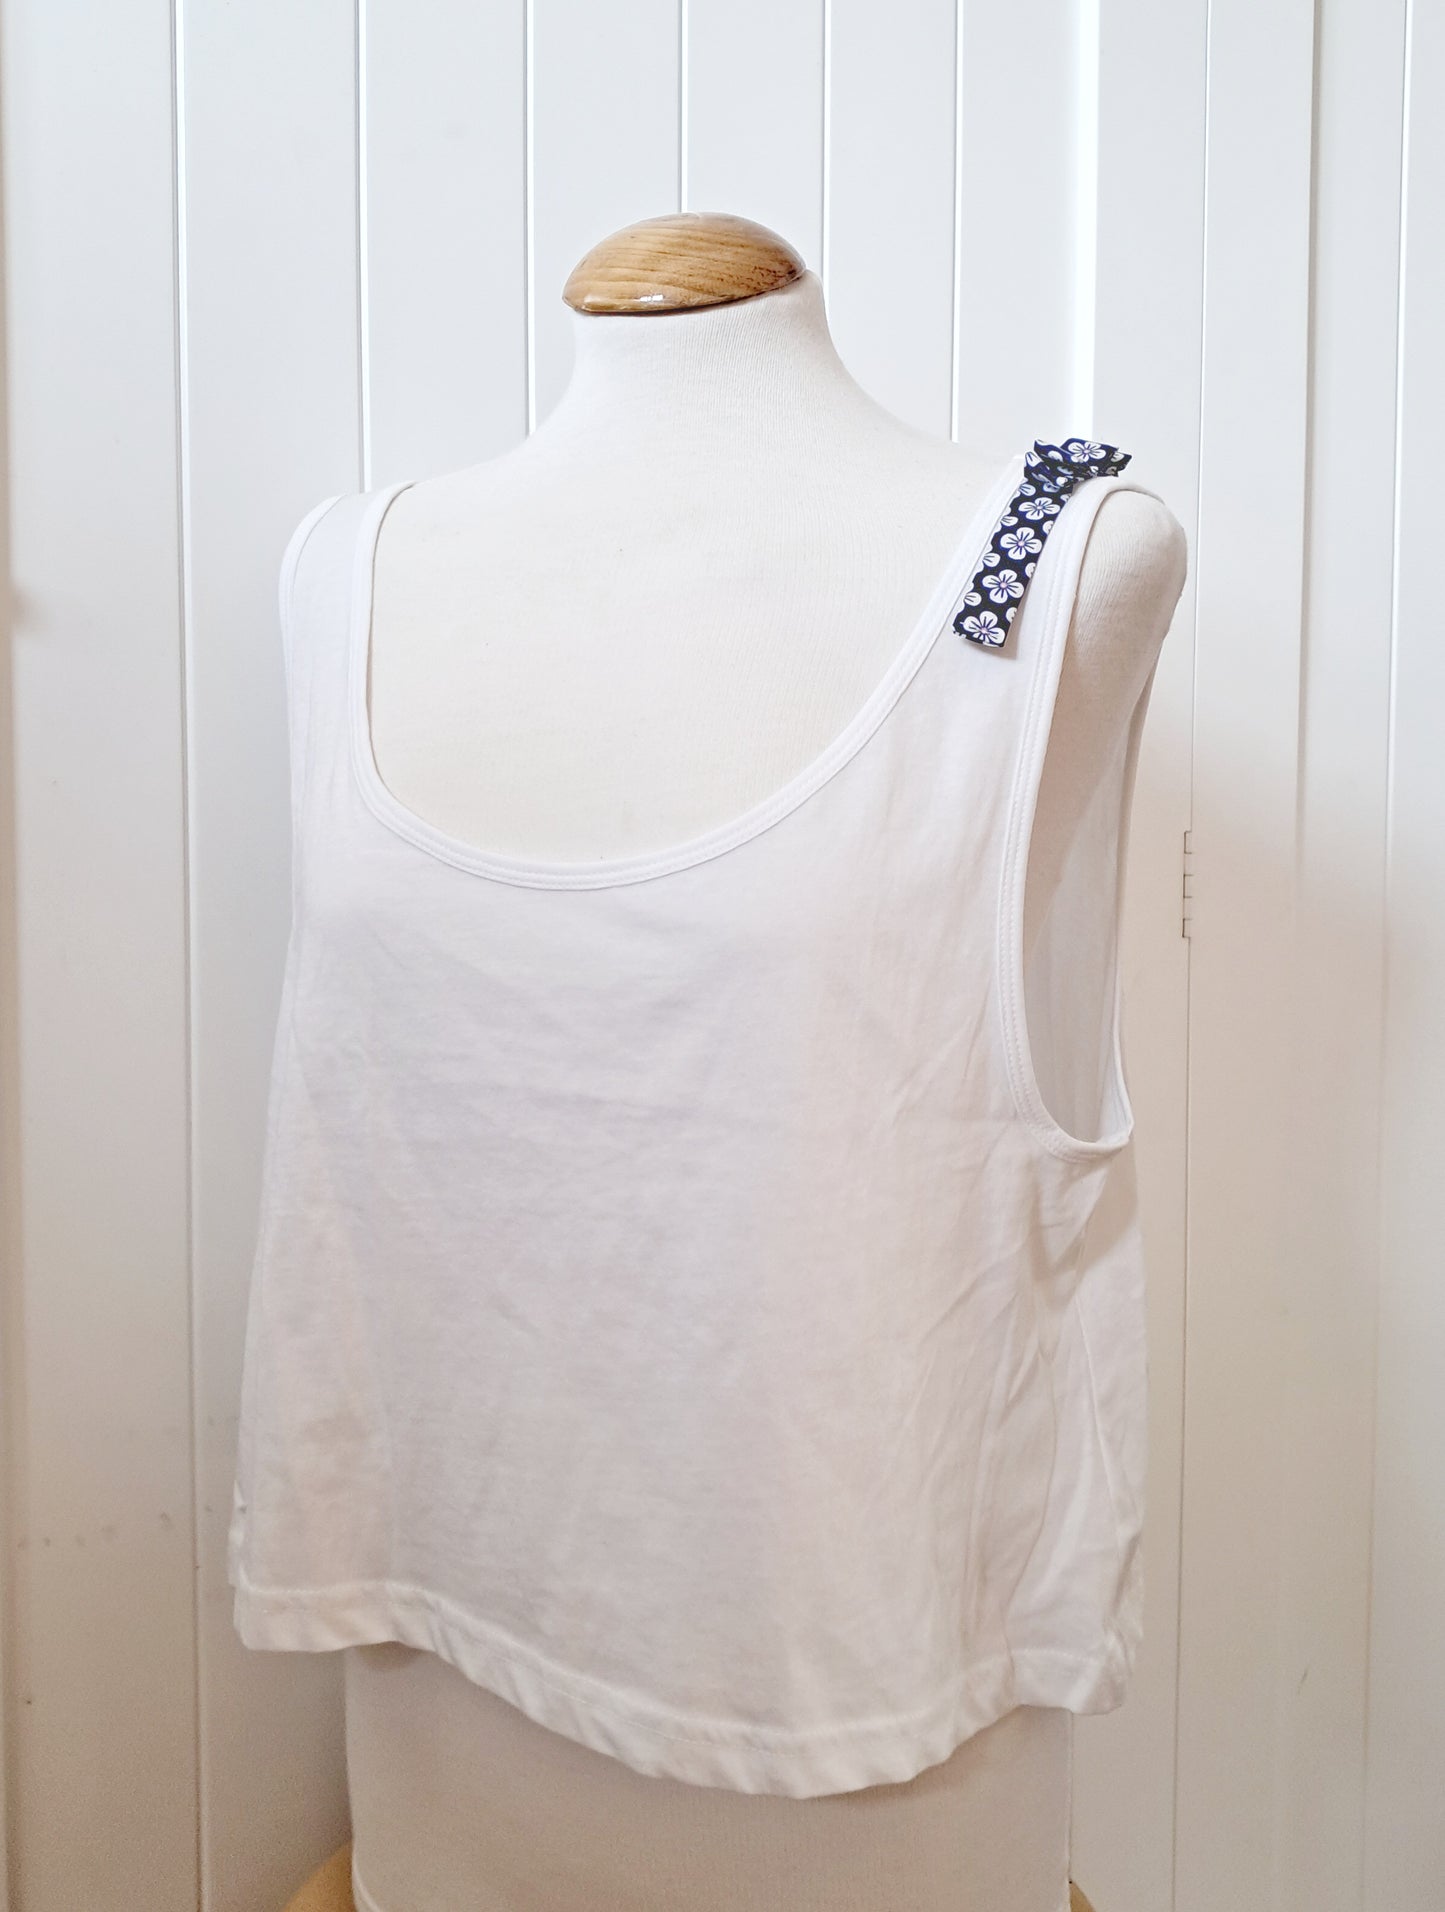 Camiseta de tirantes blanca con detalle en el hombro